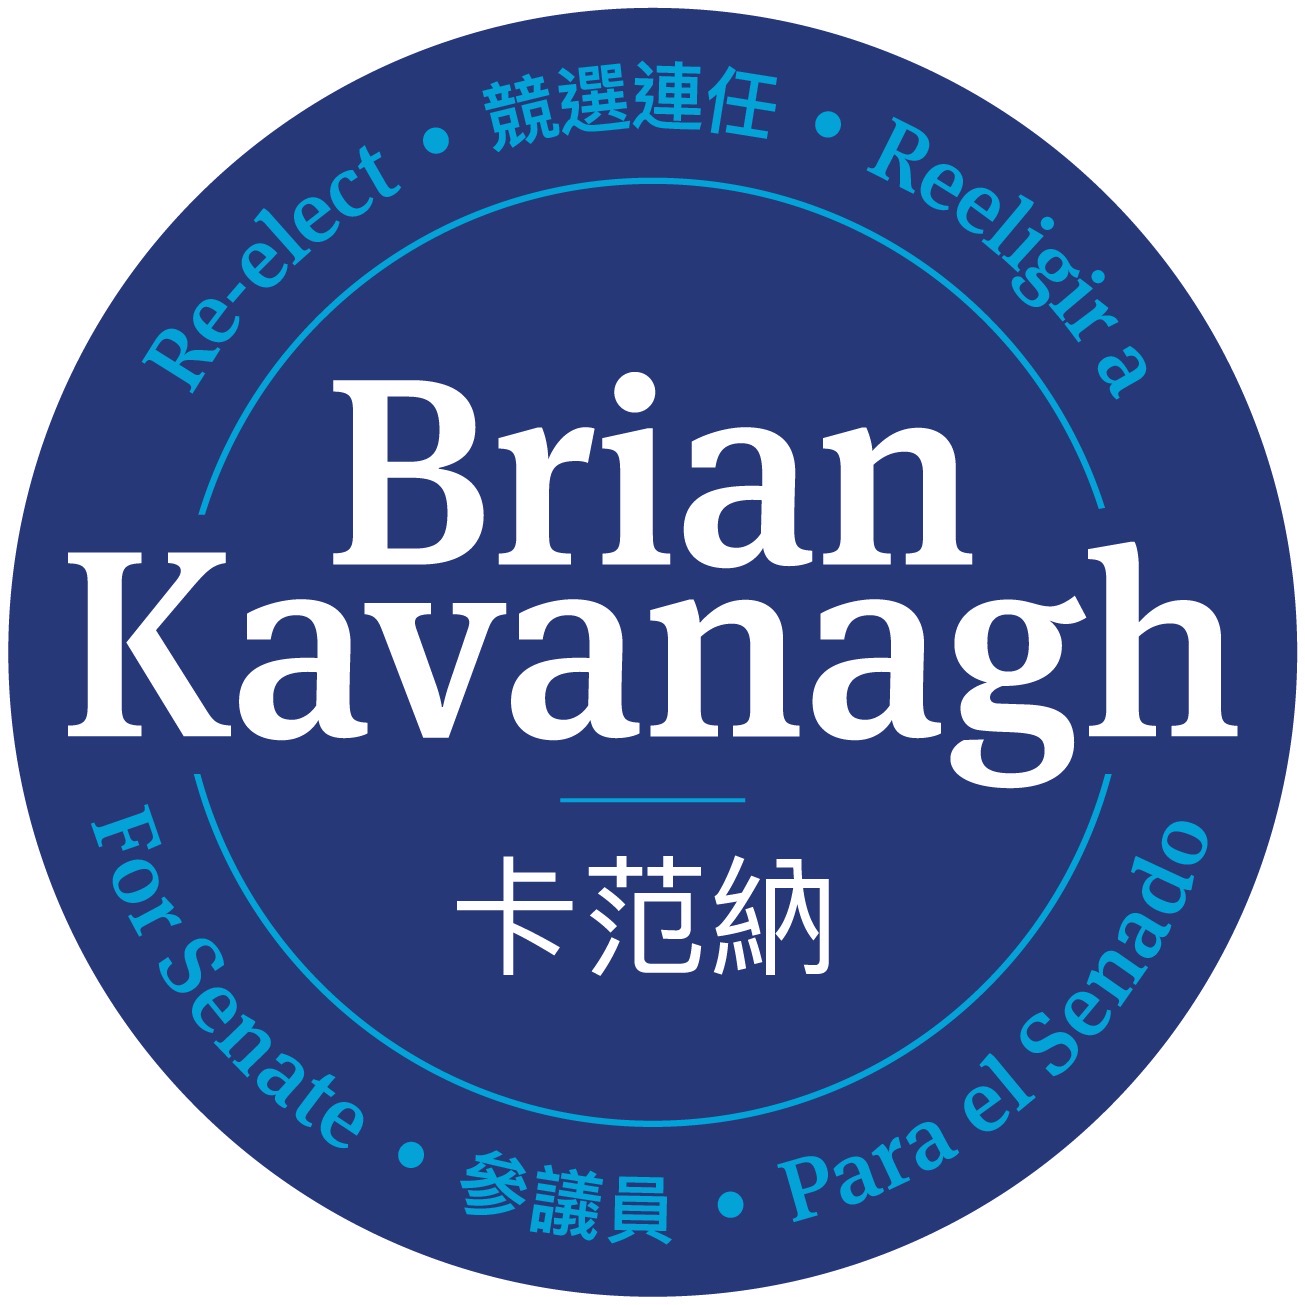 Brian Kavanagh